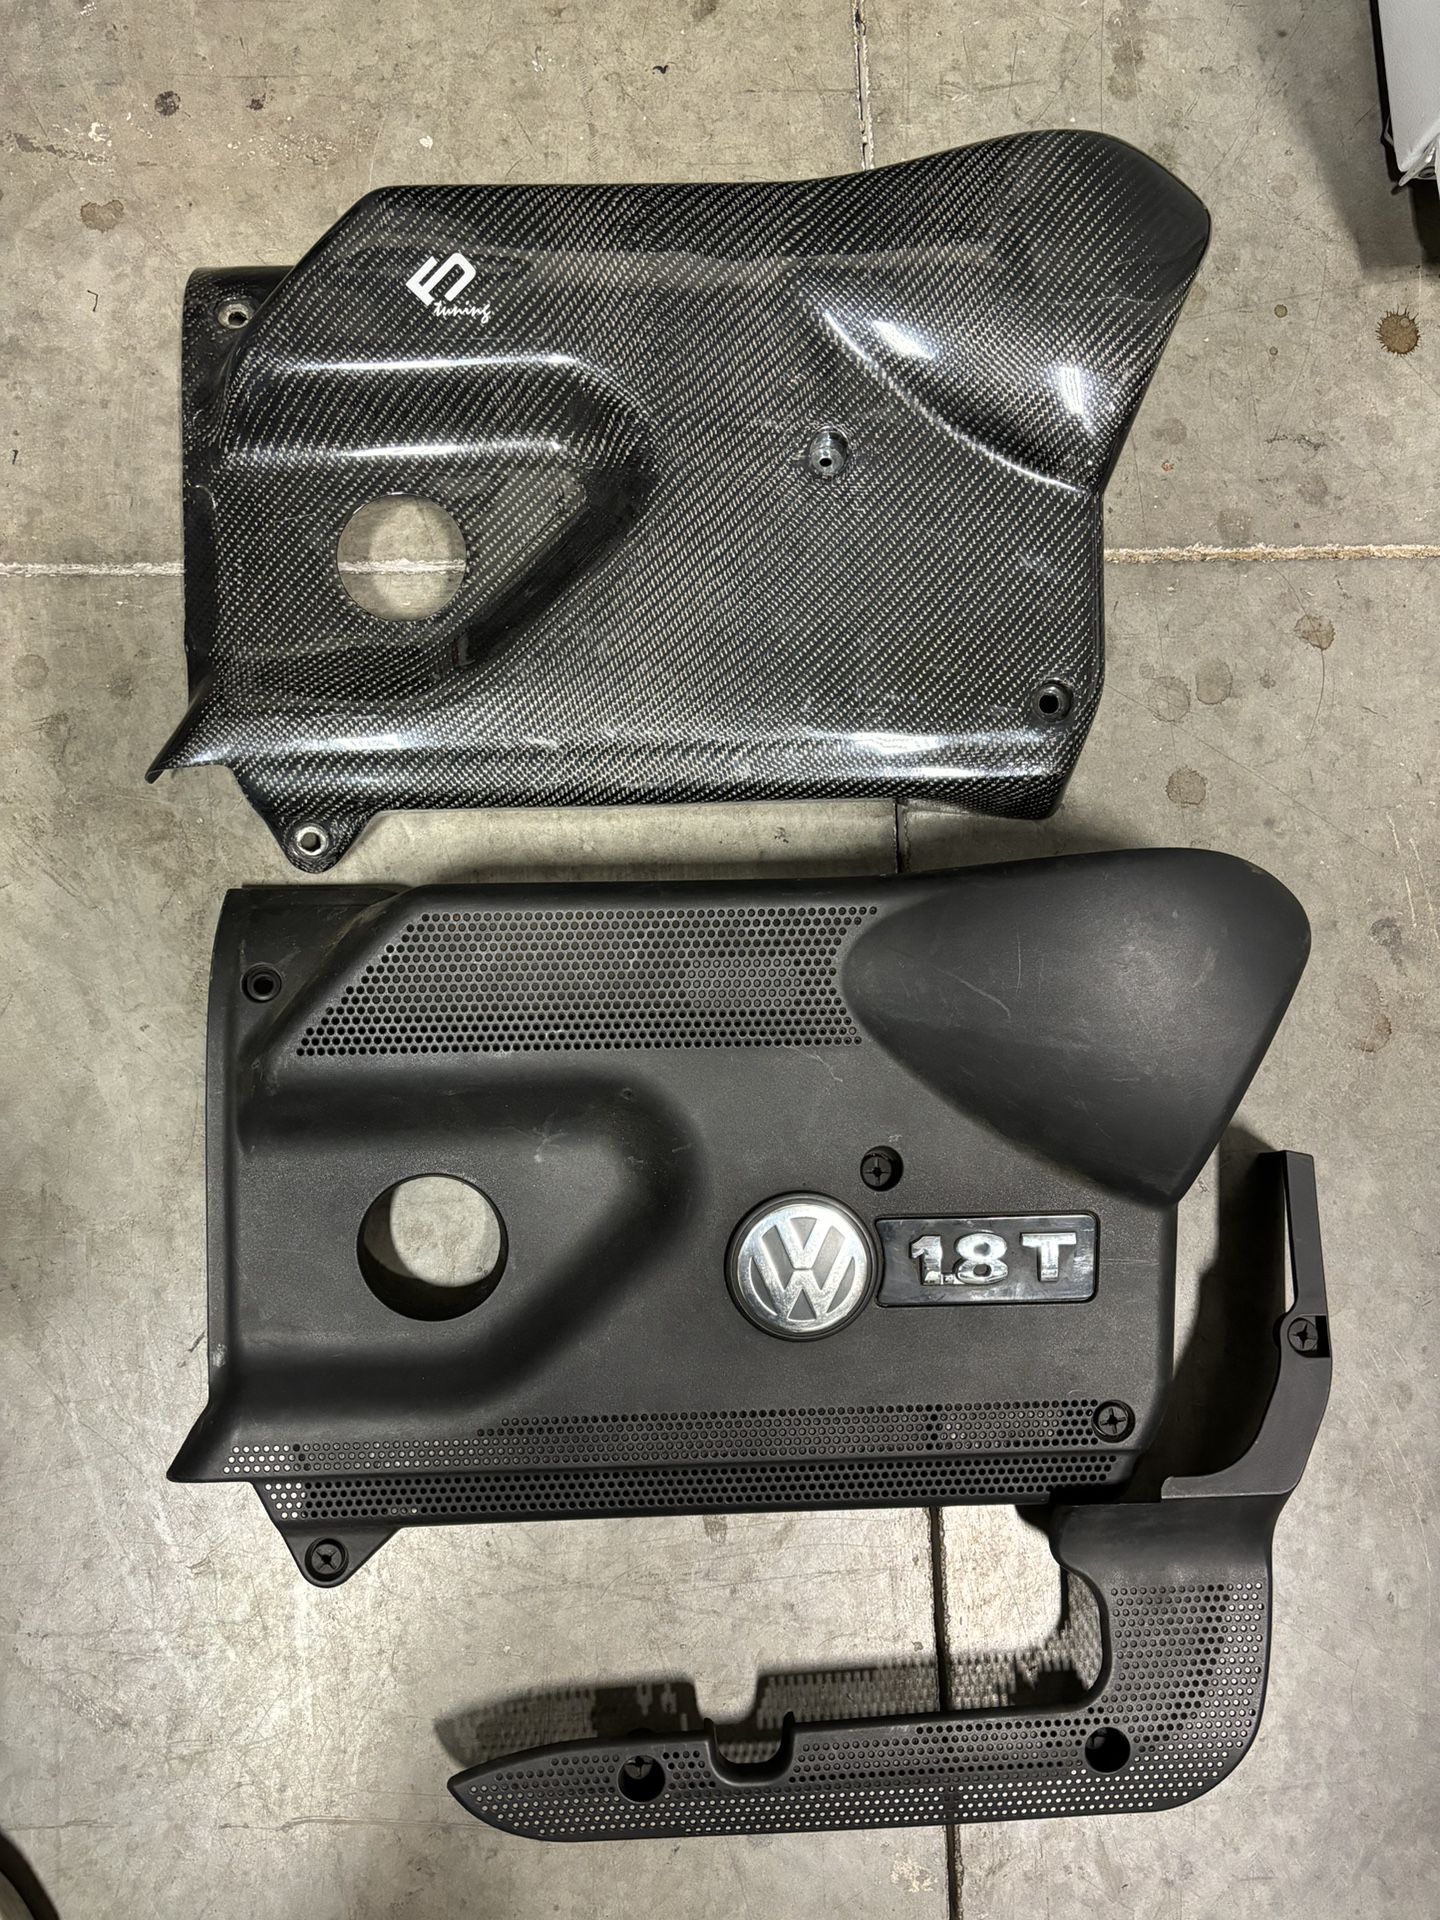 Vw Audi 1.8t Carbon Fiber Engine Cover